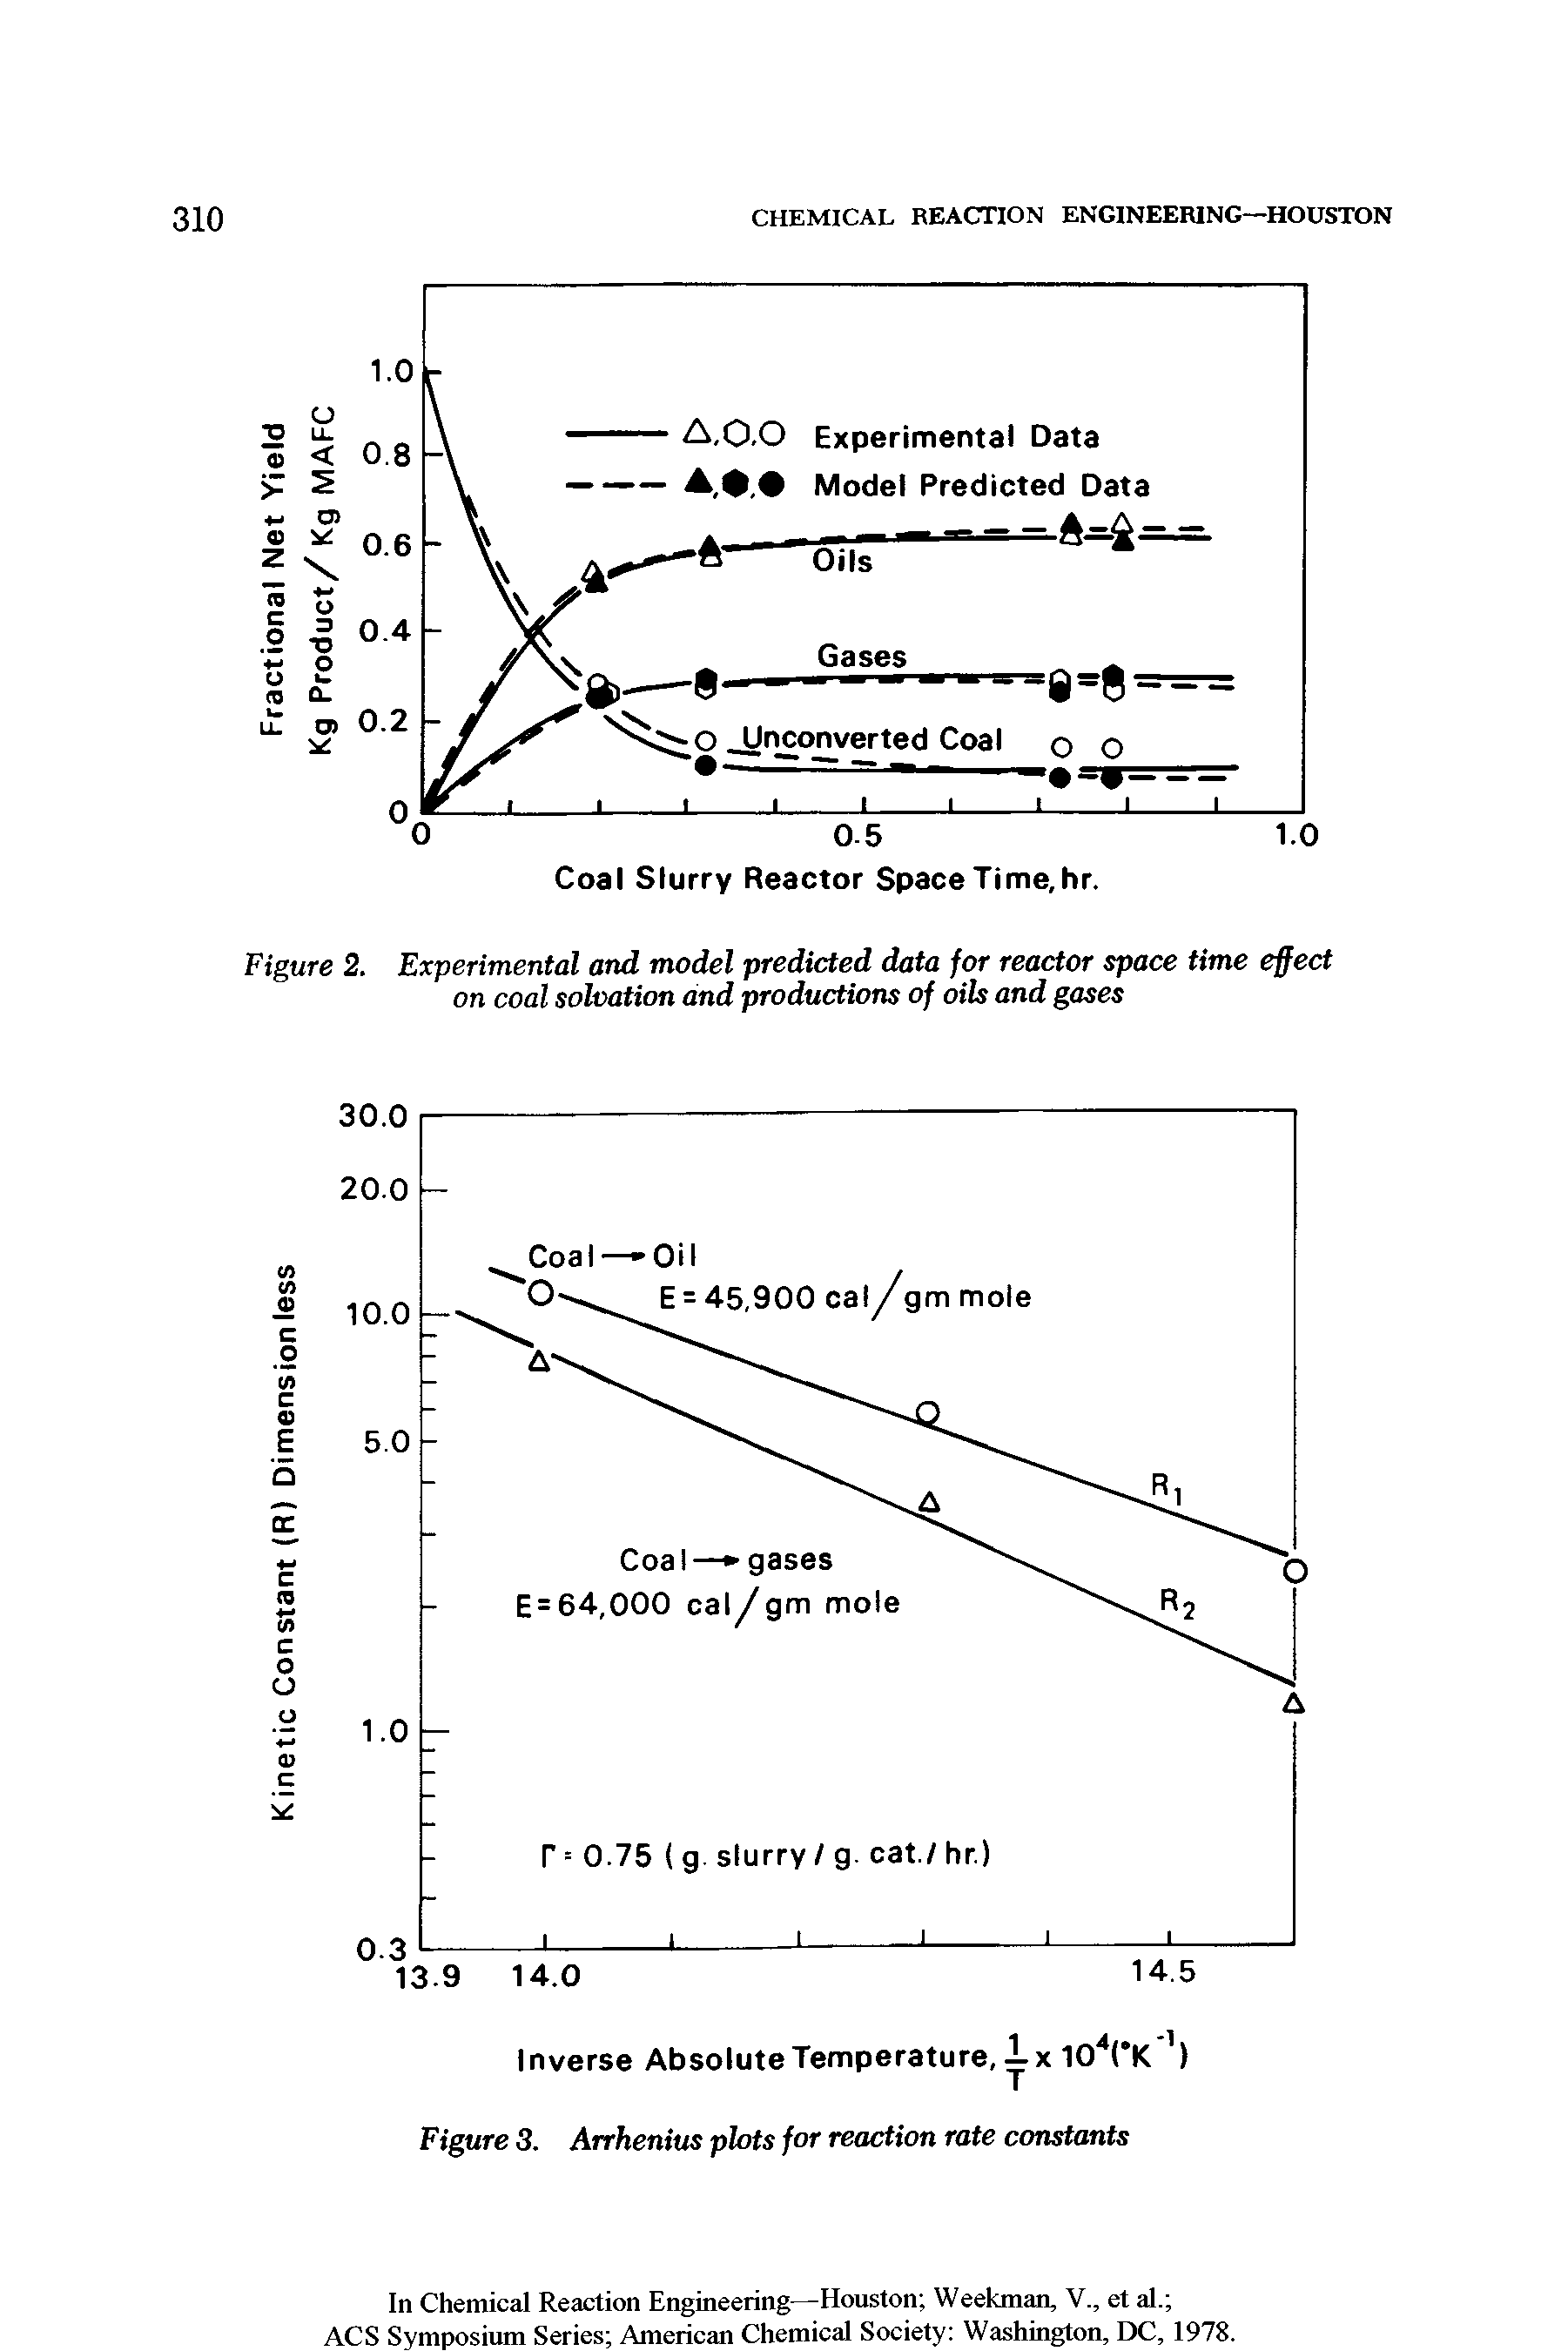 Figure 3. Arrhenius plots for reaction rate constants...